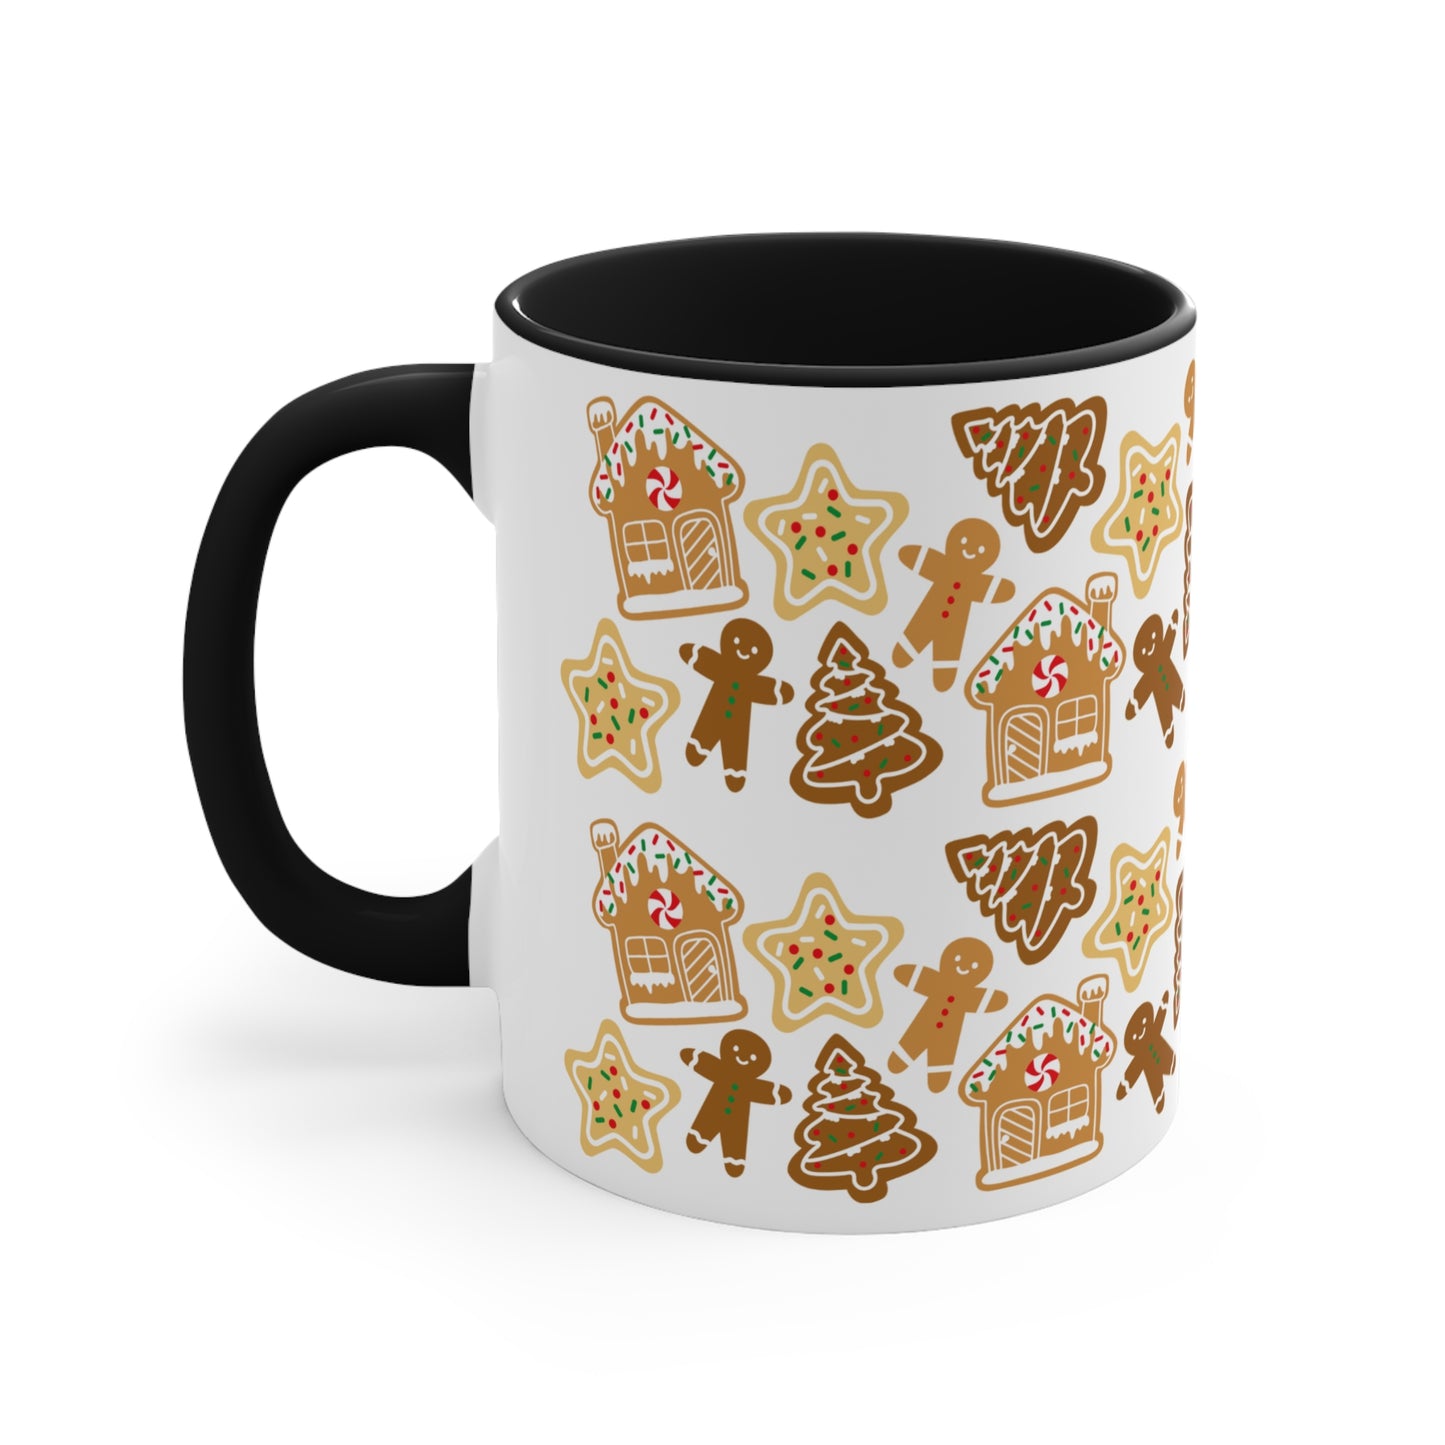 Gingerbread man Coffee Mug, 11oz for holiday season and Christmas lovers